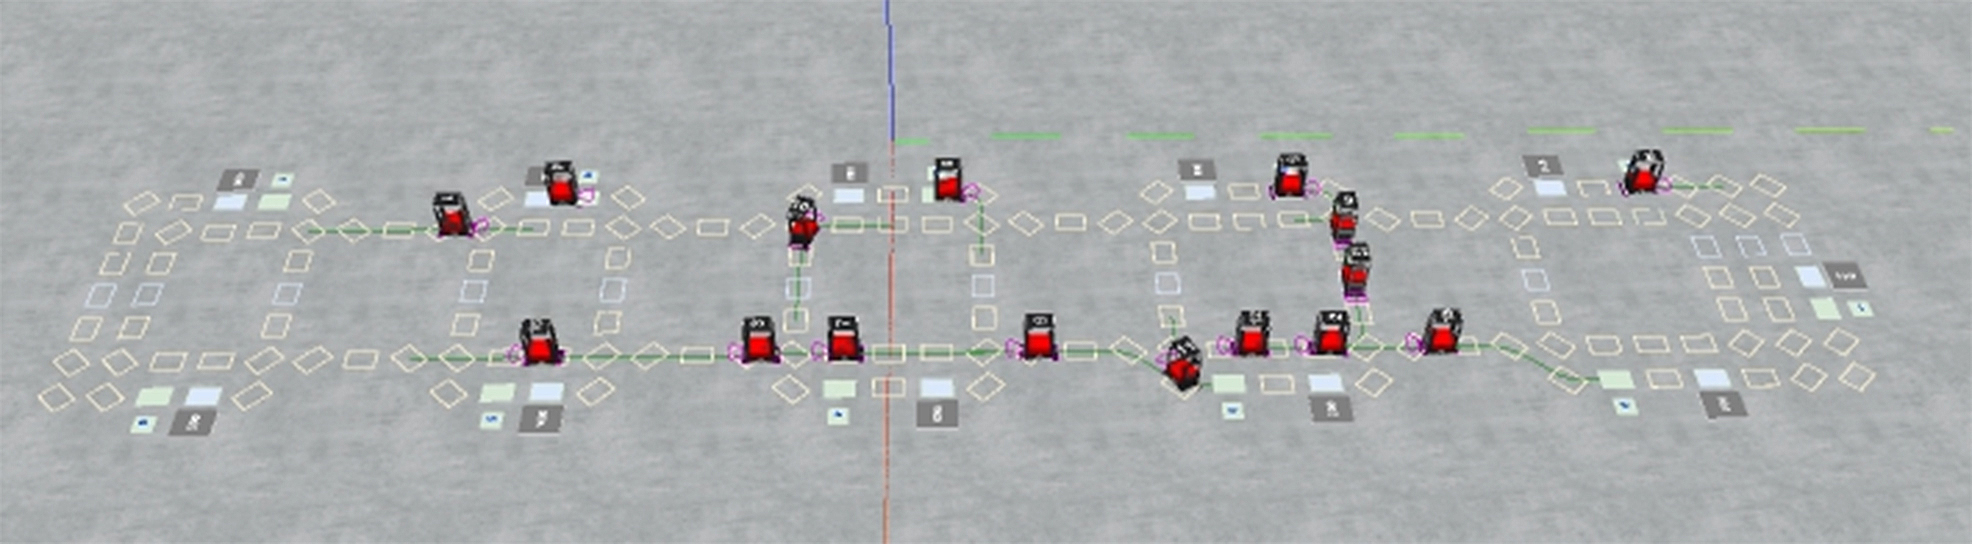 Een simulatie van de robotsorteervloot van Prime Vision